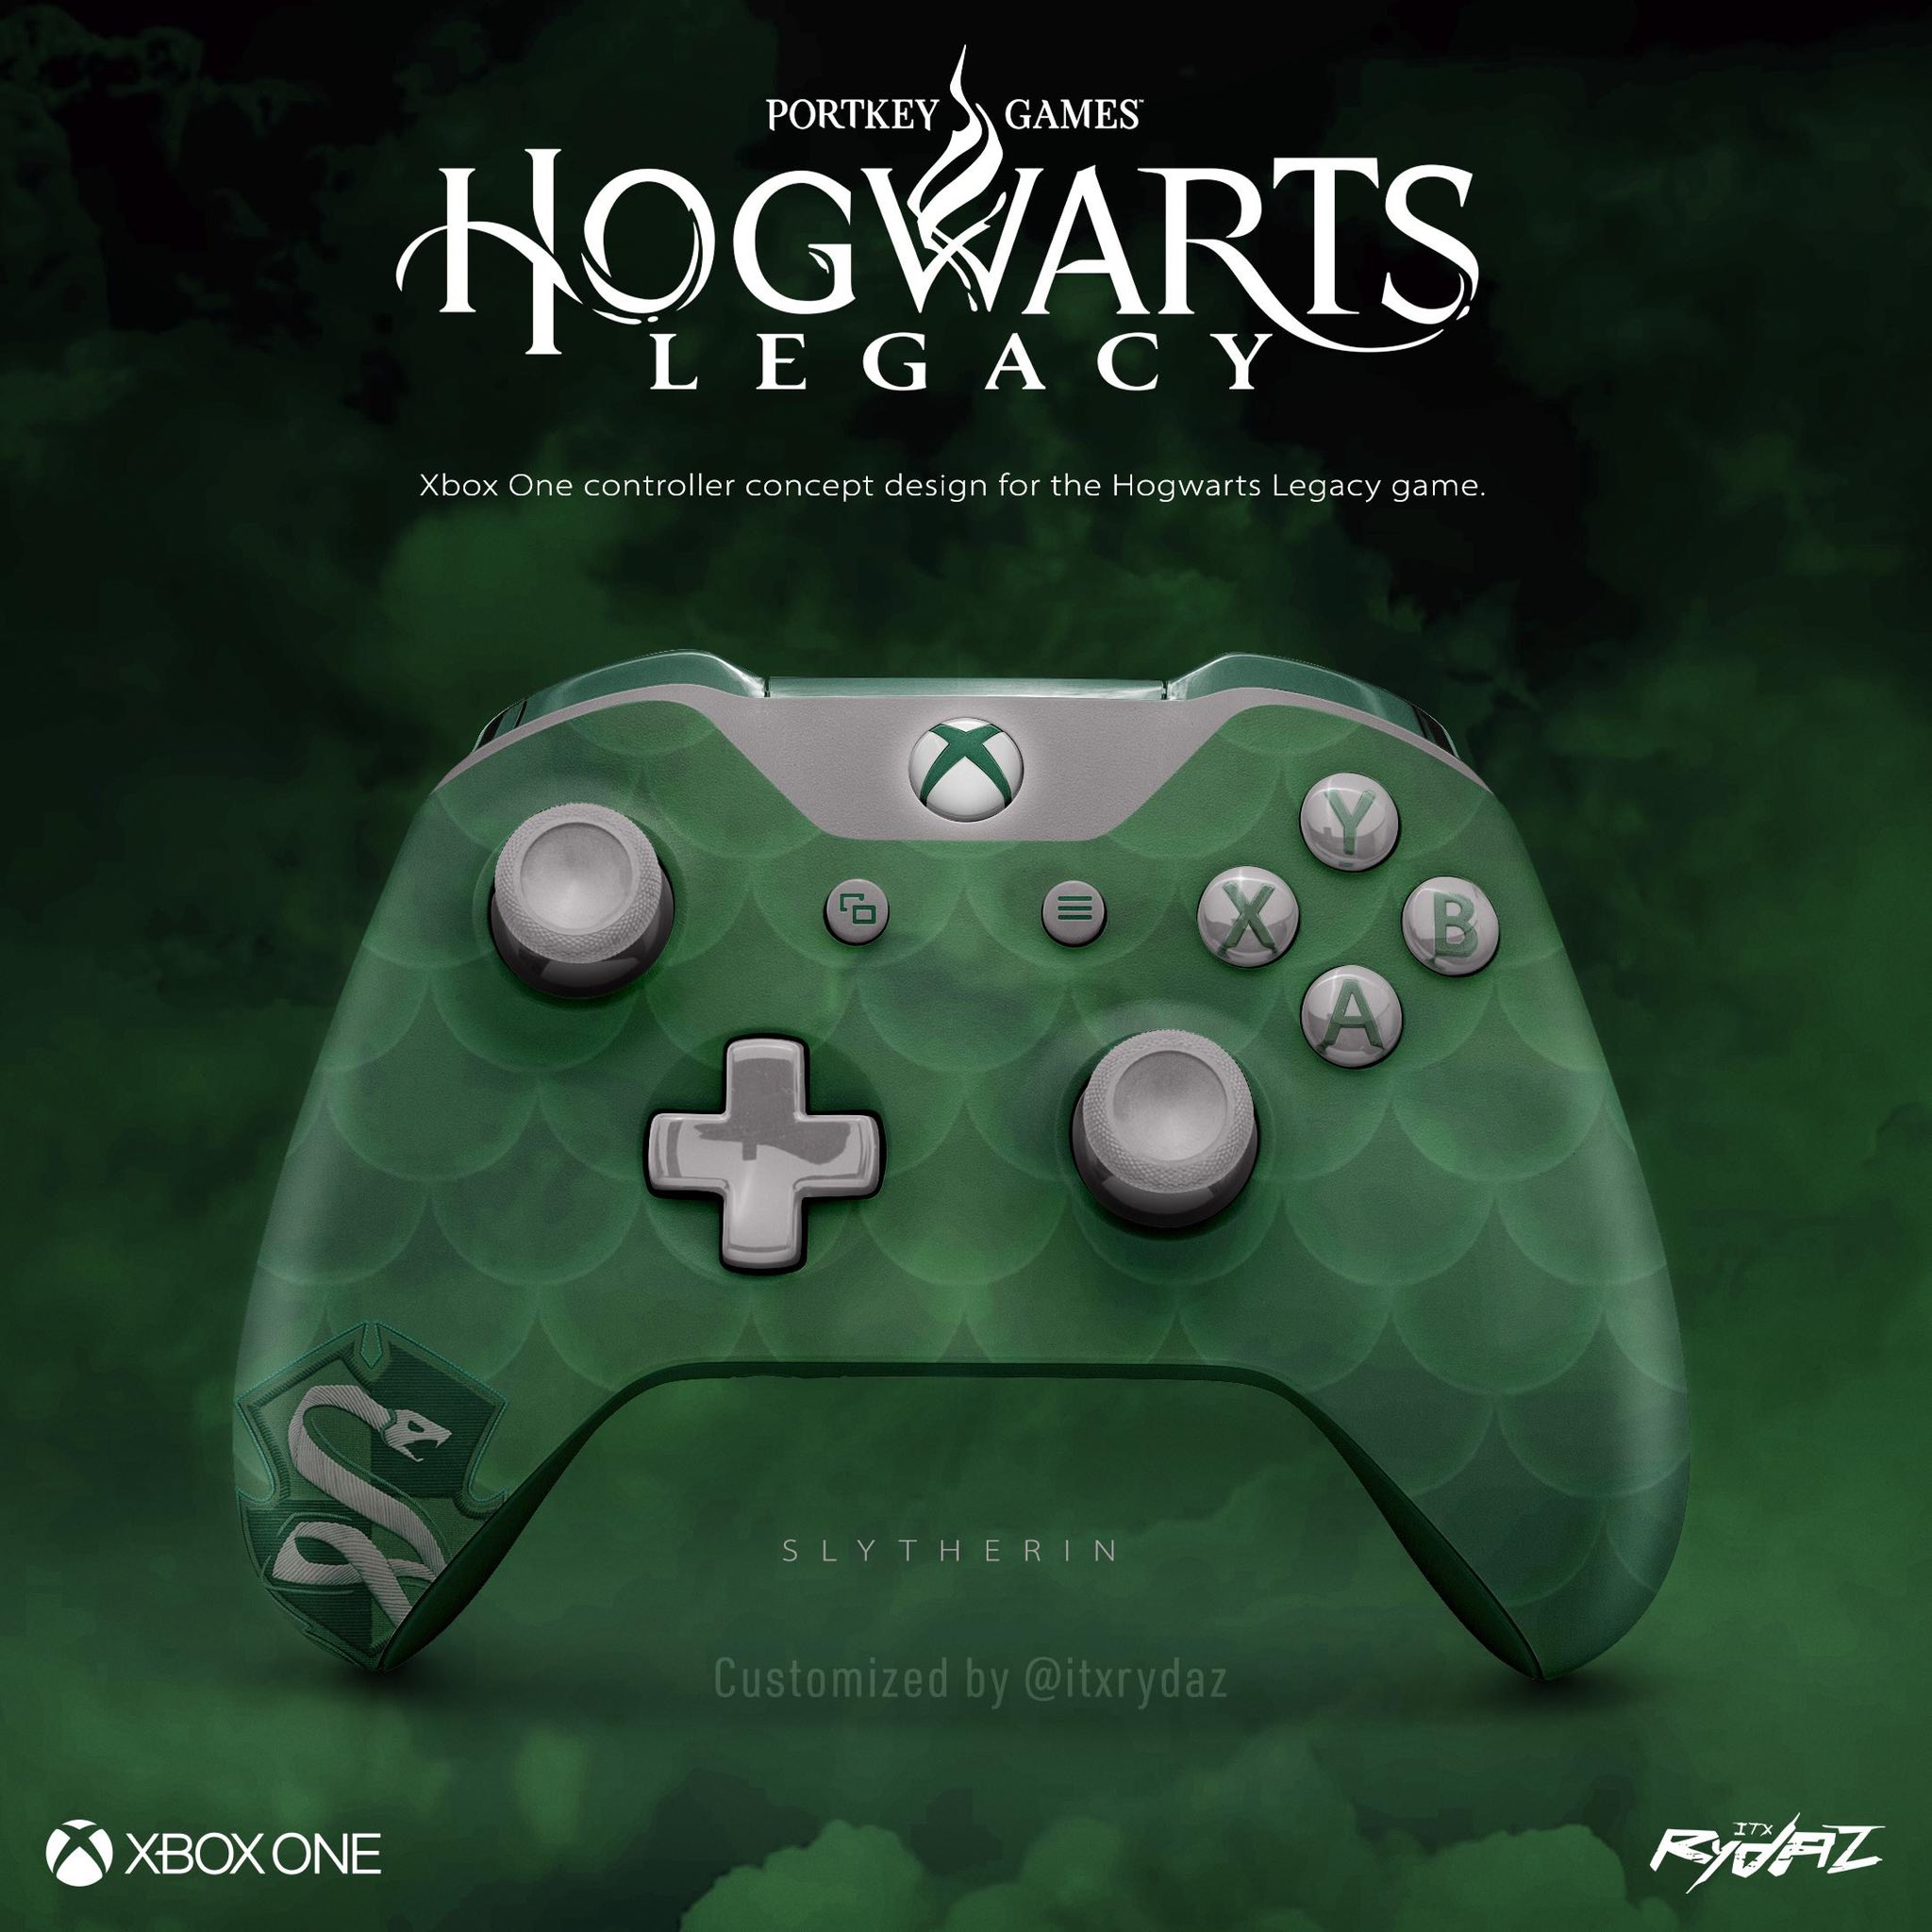 Hogwarts legacy on xbox : r/xbox